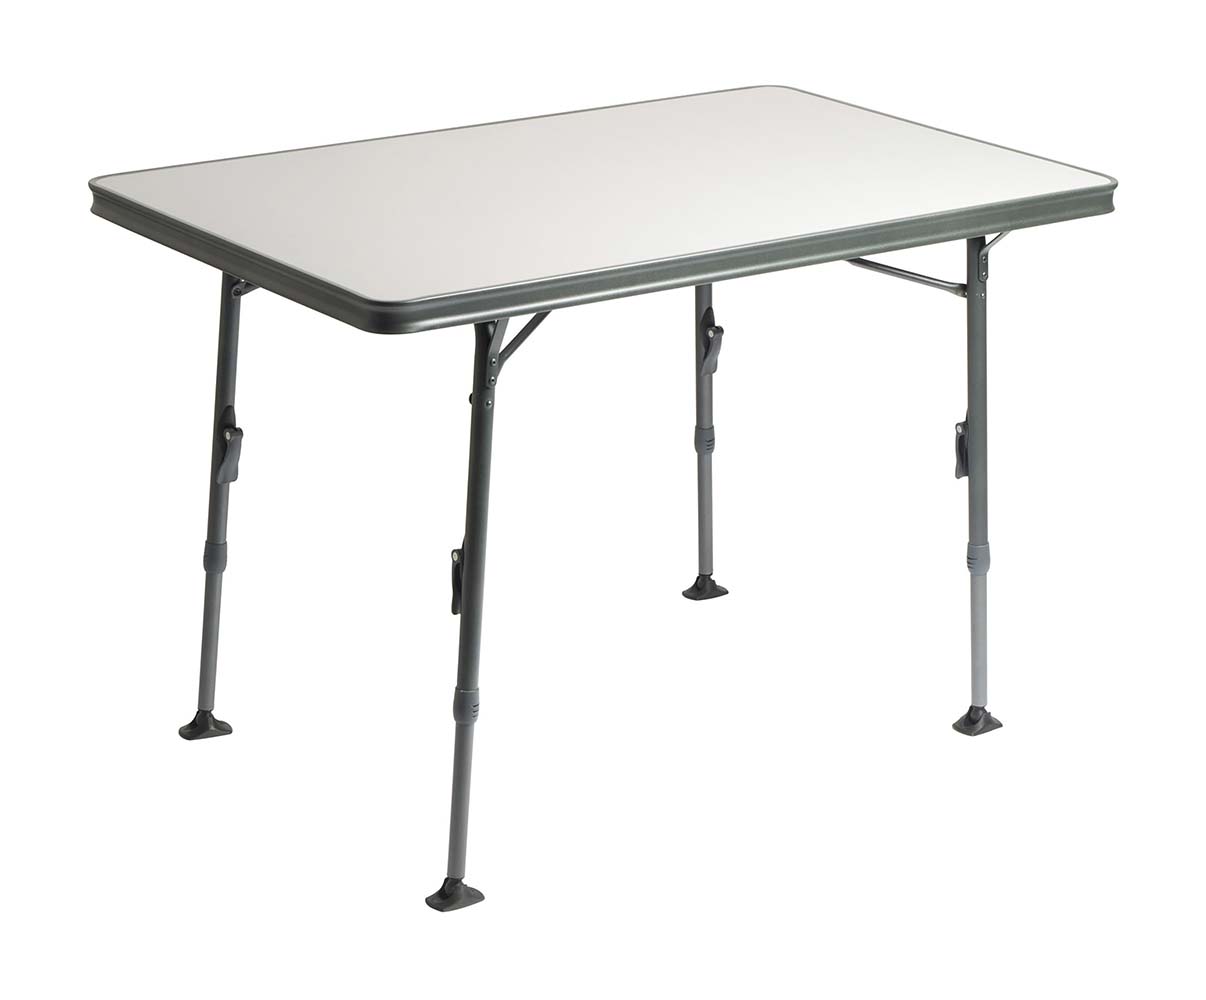 1151380 Een luxe en stijlvolle tafel. Deze lichtgewicht campingtafel is voorzien van een hittebestendig en watervast tafelblad en heeft een extra verstevigde aluminium constructie. Daarnaast zorgt de afwerking van de poten en van de tafelrand voor een stijlvolle uitstraling. De tafel beschikt over traploos verstelbare poten (59-74 cm) die zijn in te klappen, hierdoor is deze tafel eenvoudig en compact te vervoeren (ingeklapt (lxbxh): 110x70x3,8 cm). Door dat deze tafel beschikt over stabilisatie voeten, staat hij stabiel op elke ondergrond. Maximale belasting: 50 kilogram.